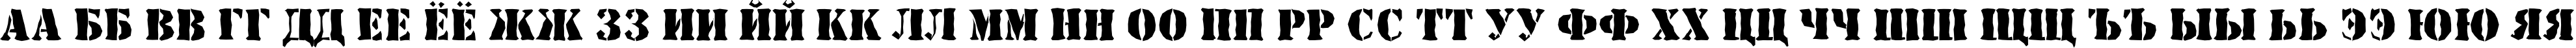 Пример написания русского алфавита шрифтом a_StamperBrk